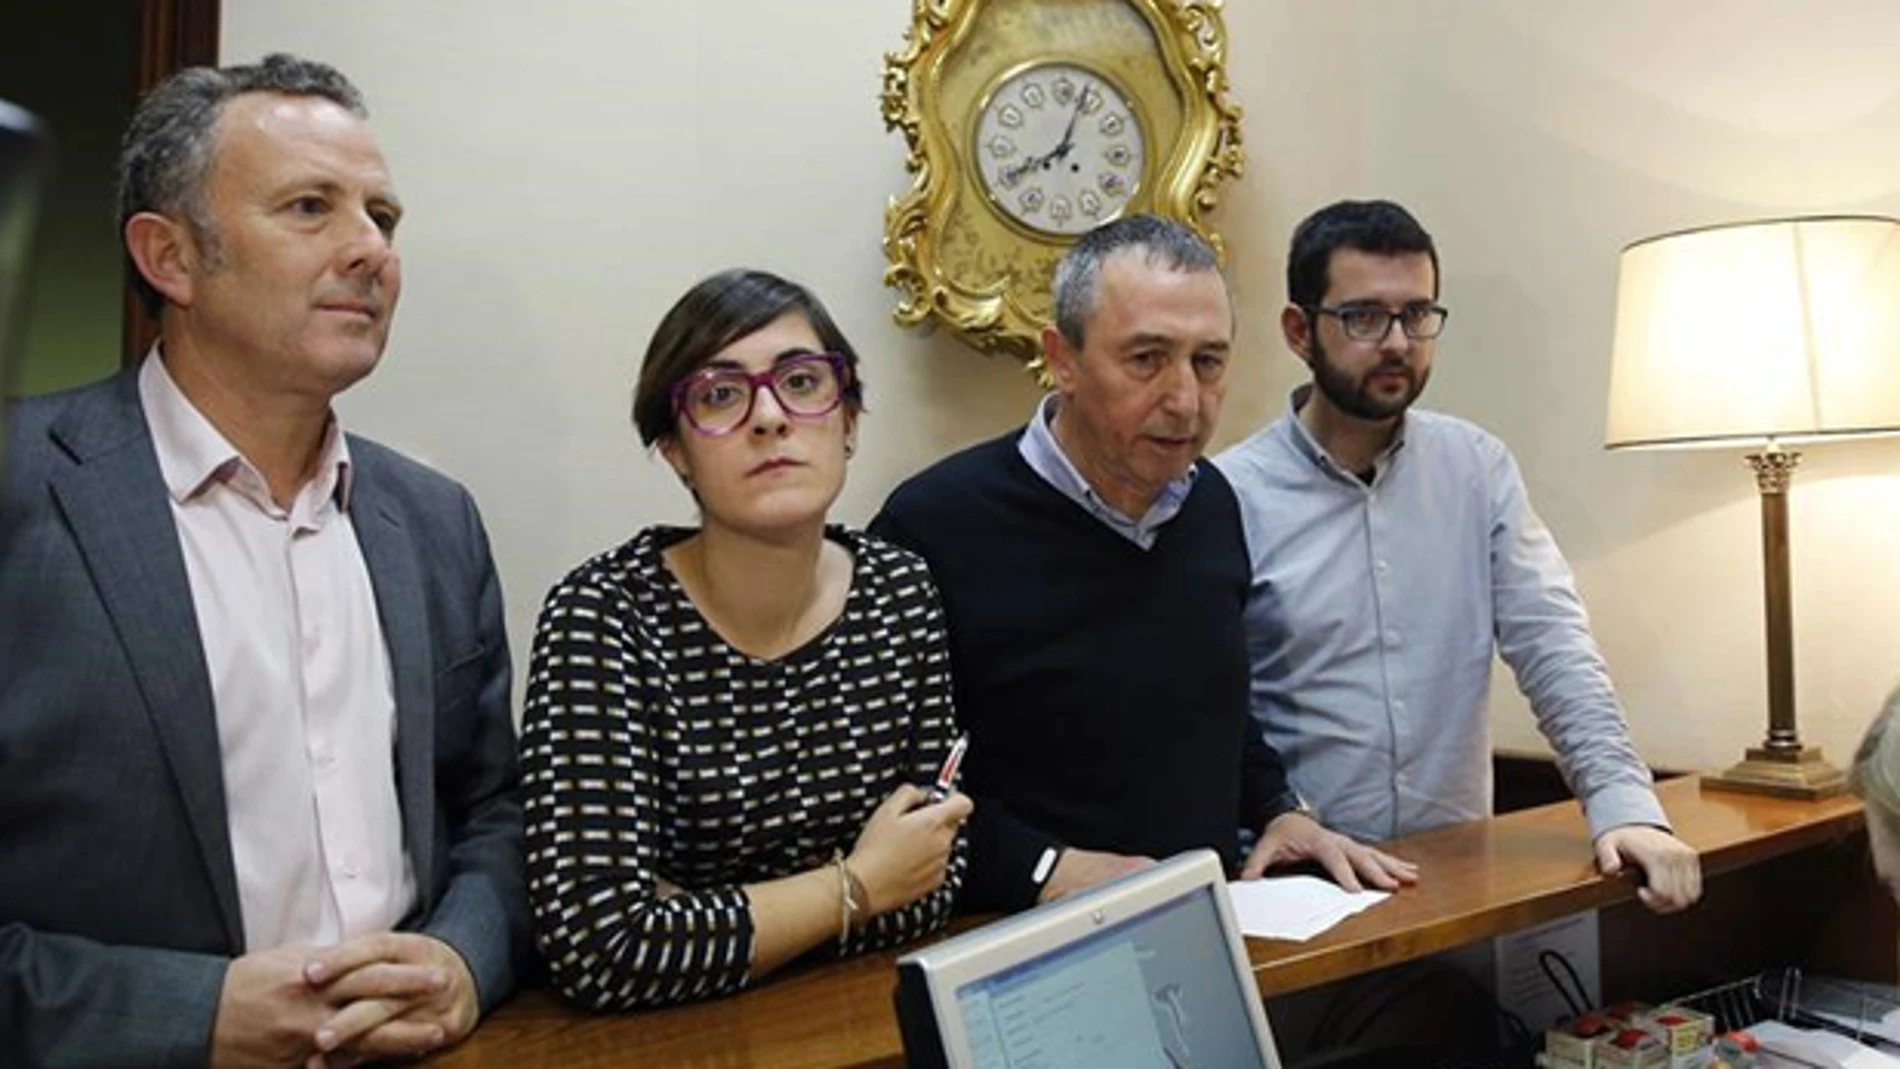  Enric Bataller, Marta Sorlï, Joan Baldoví, e Ignasi Candela, diputados de Compromís